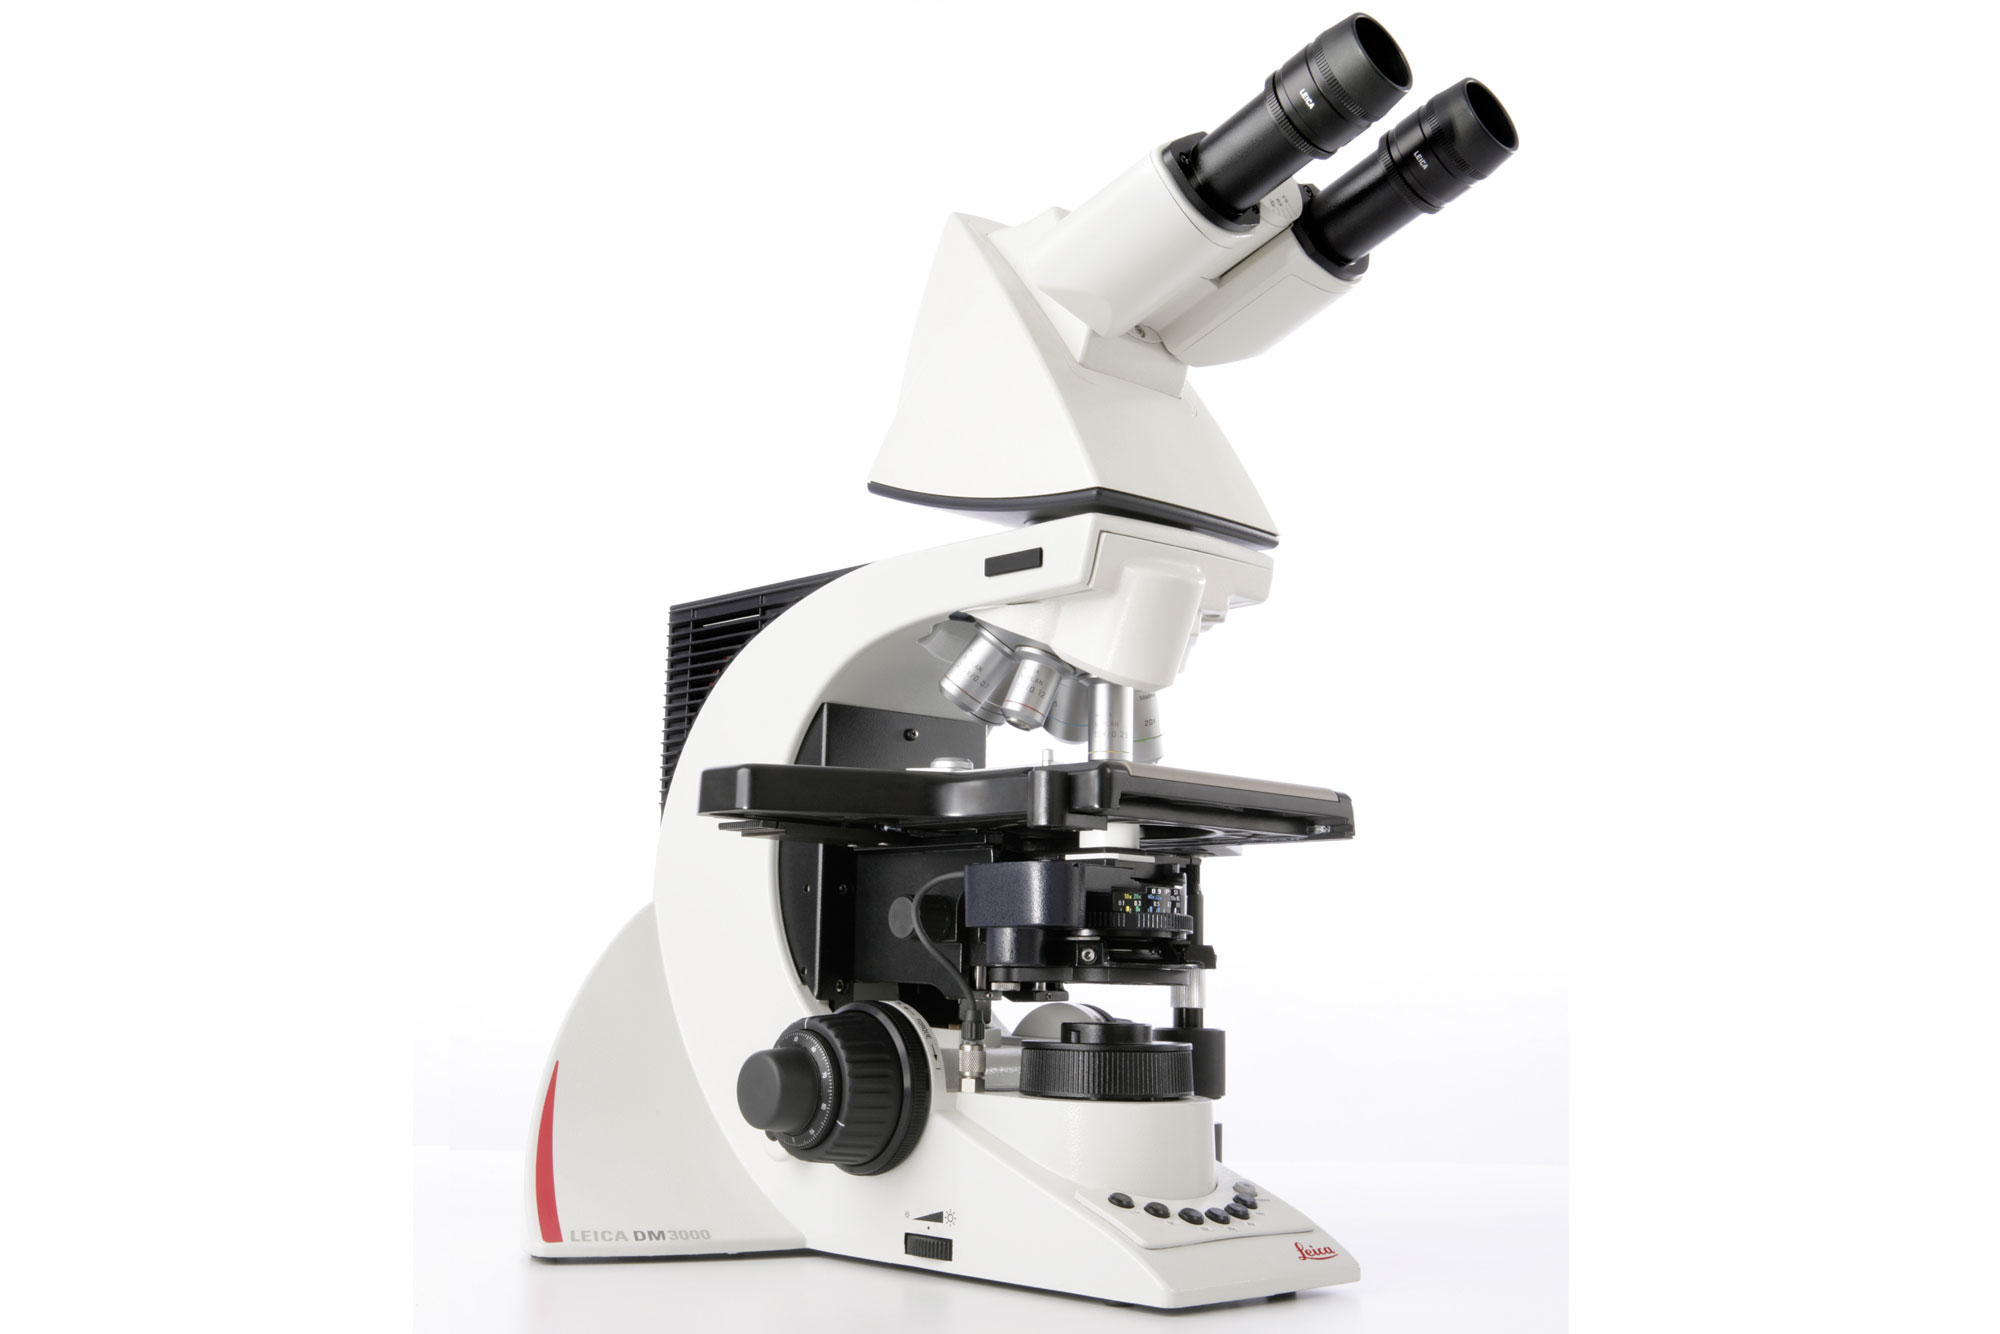 El microscopio de diseño ergonómico exclusivo Leica DM3000 mejora los flujos de trabajo en citología y patología gracias a su automatización inteligente.